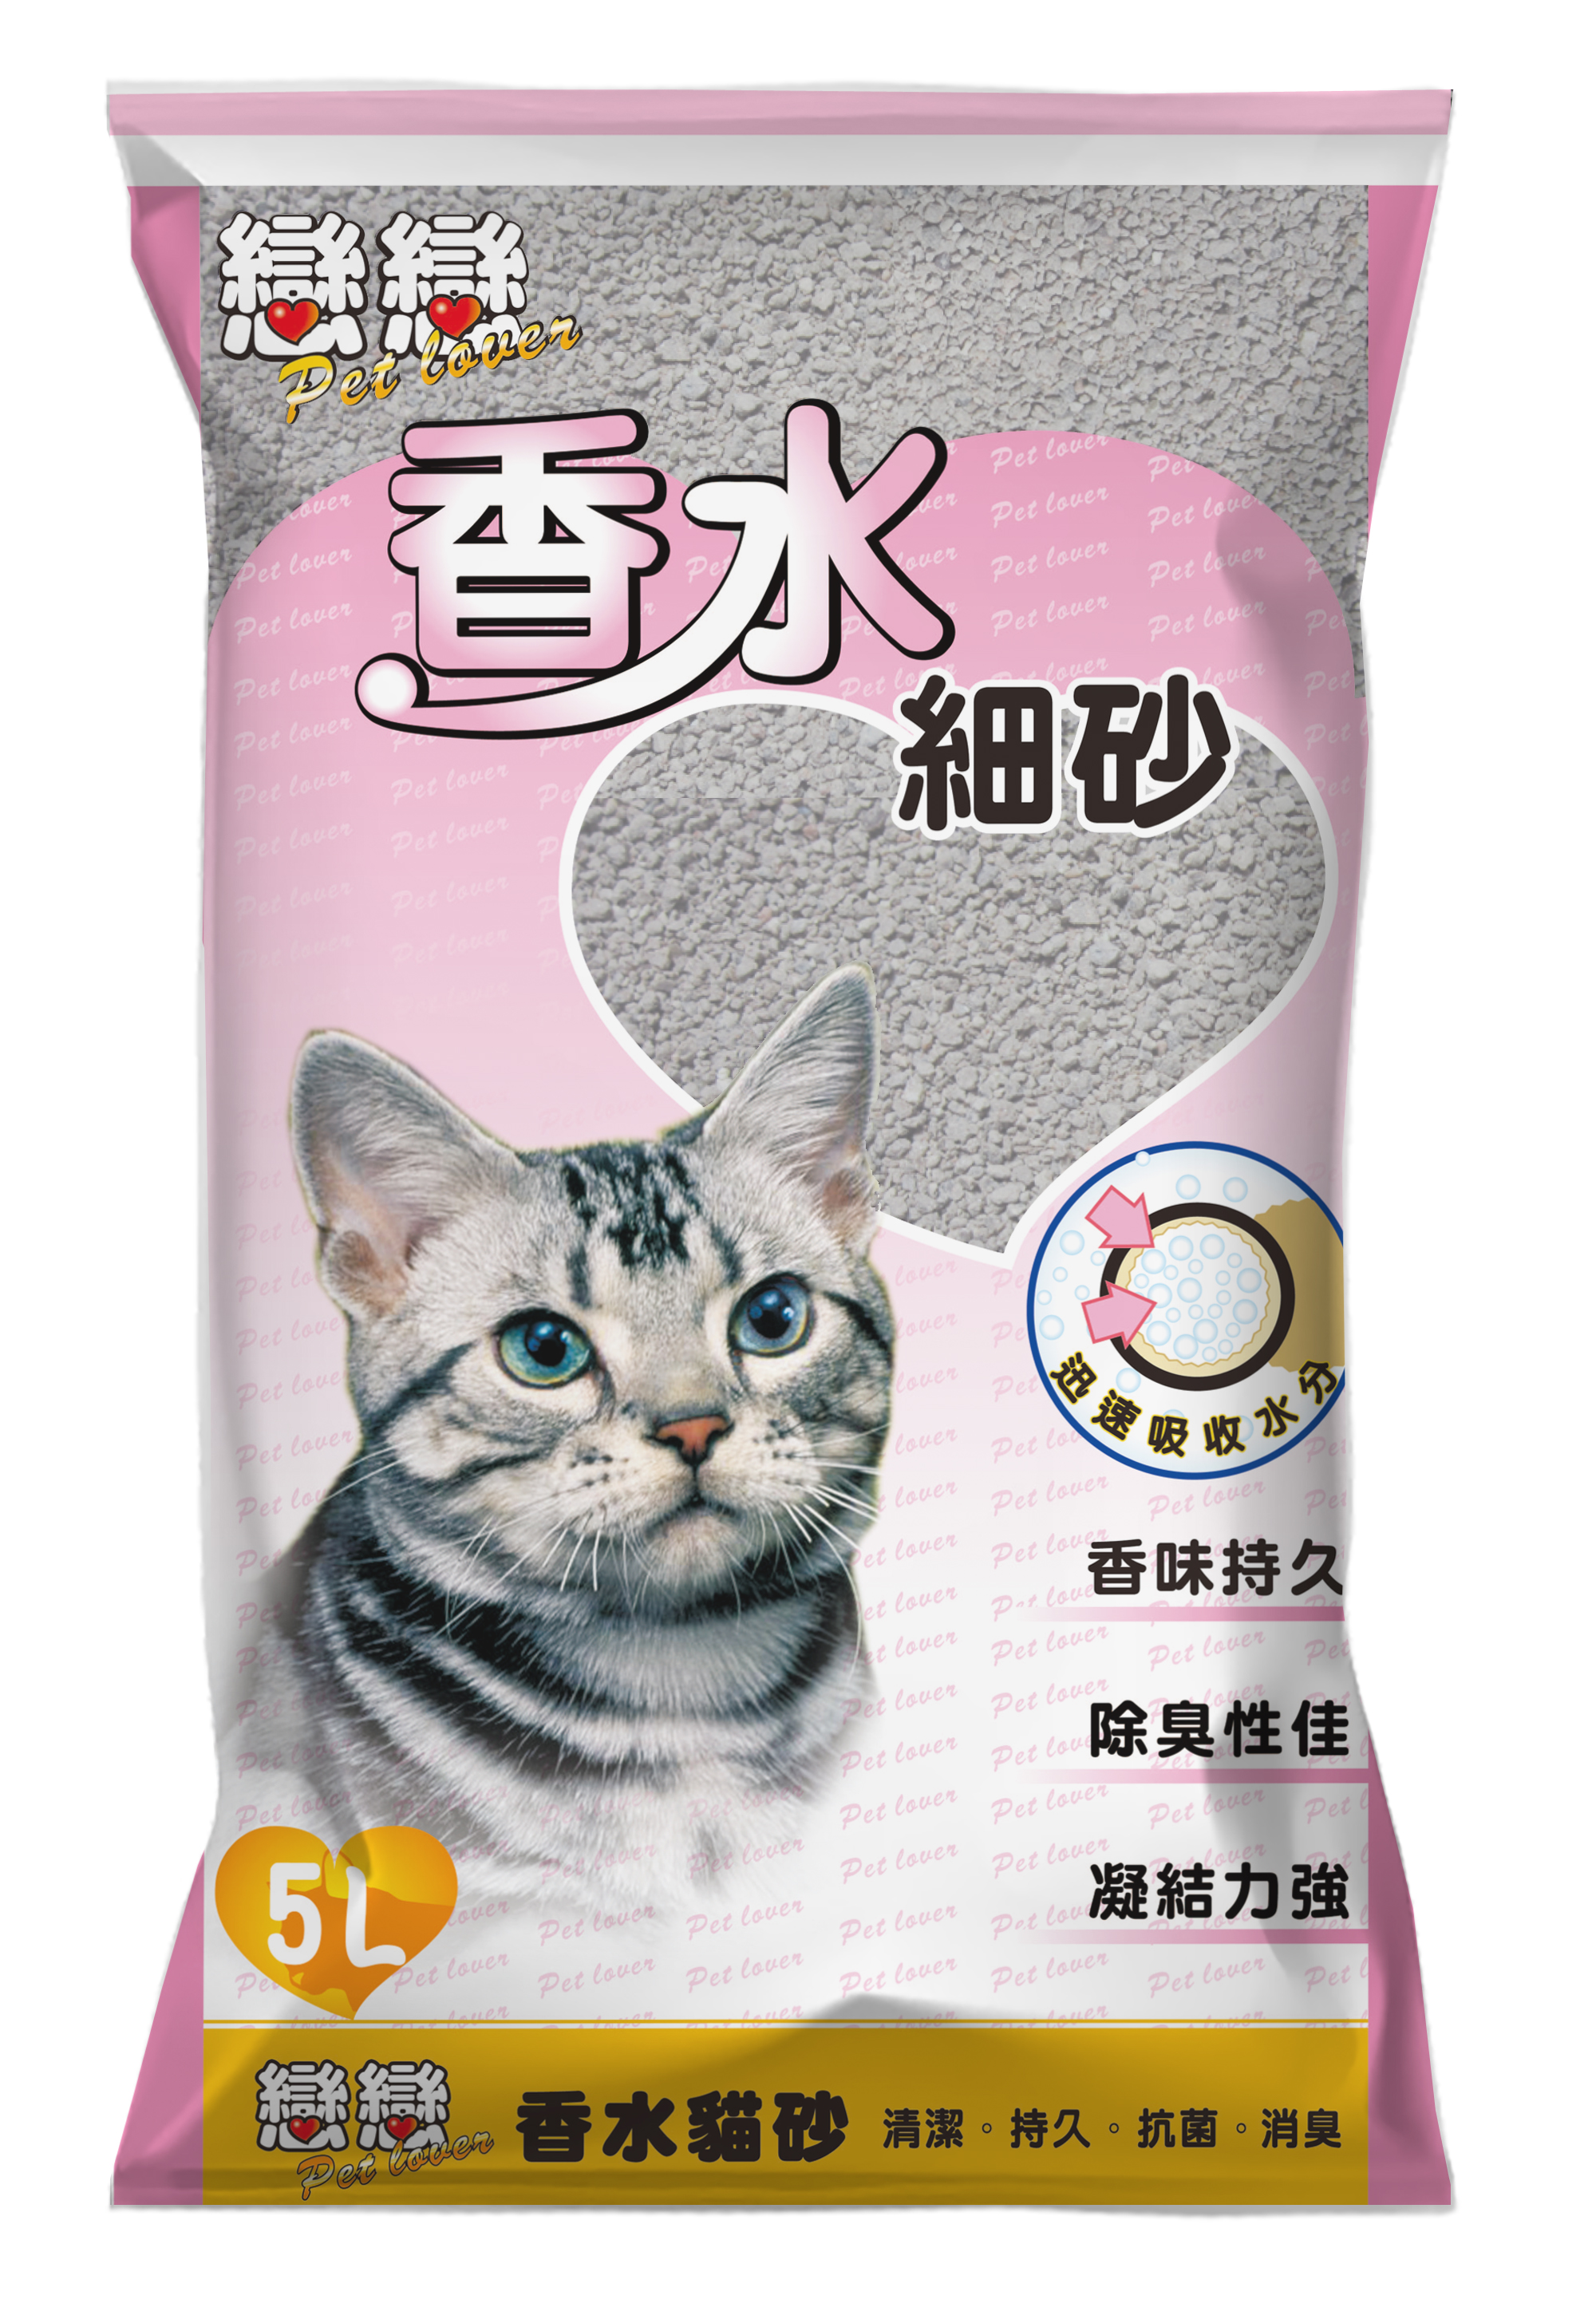 恋恋香水猫砂系列 细砂丨猫砂 便盆 全球宠物提供各式种类的猫砂